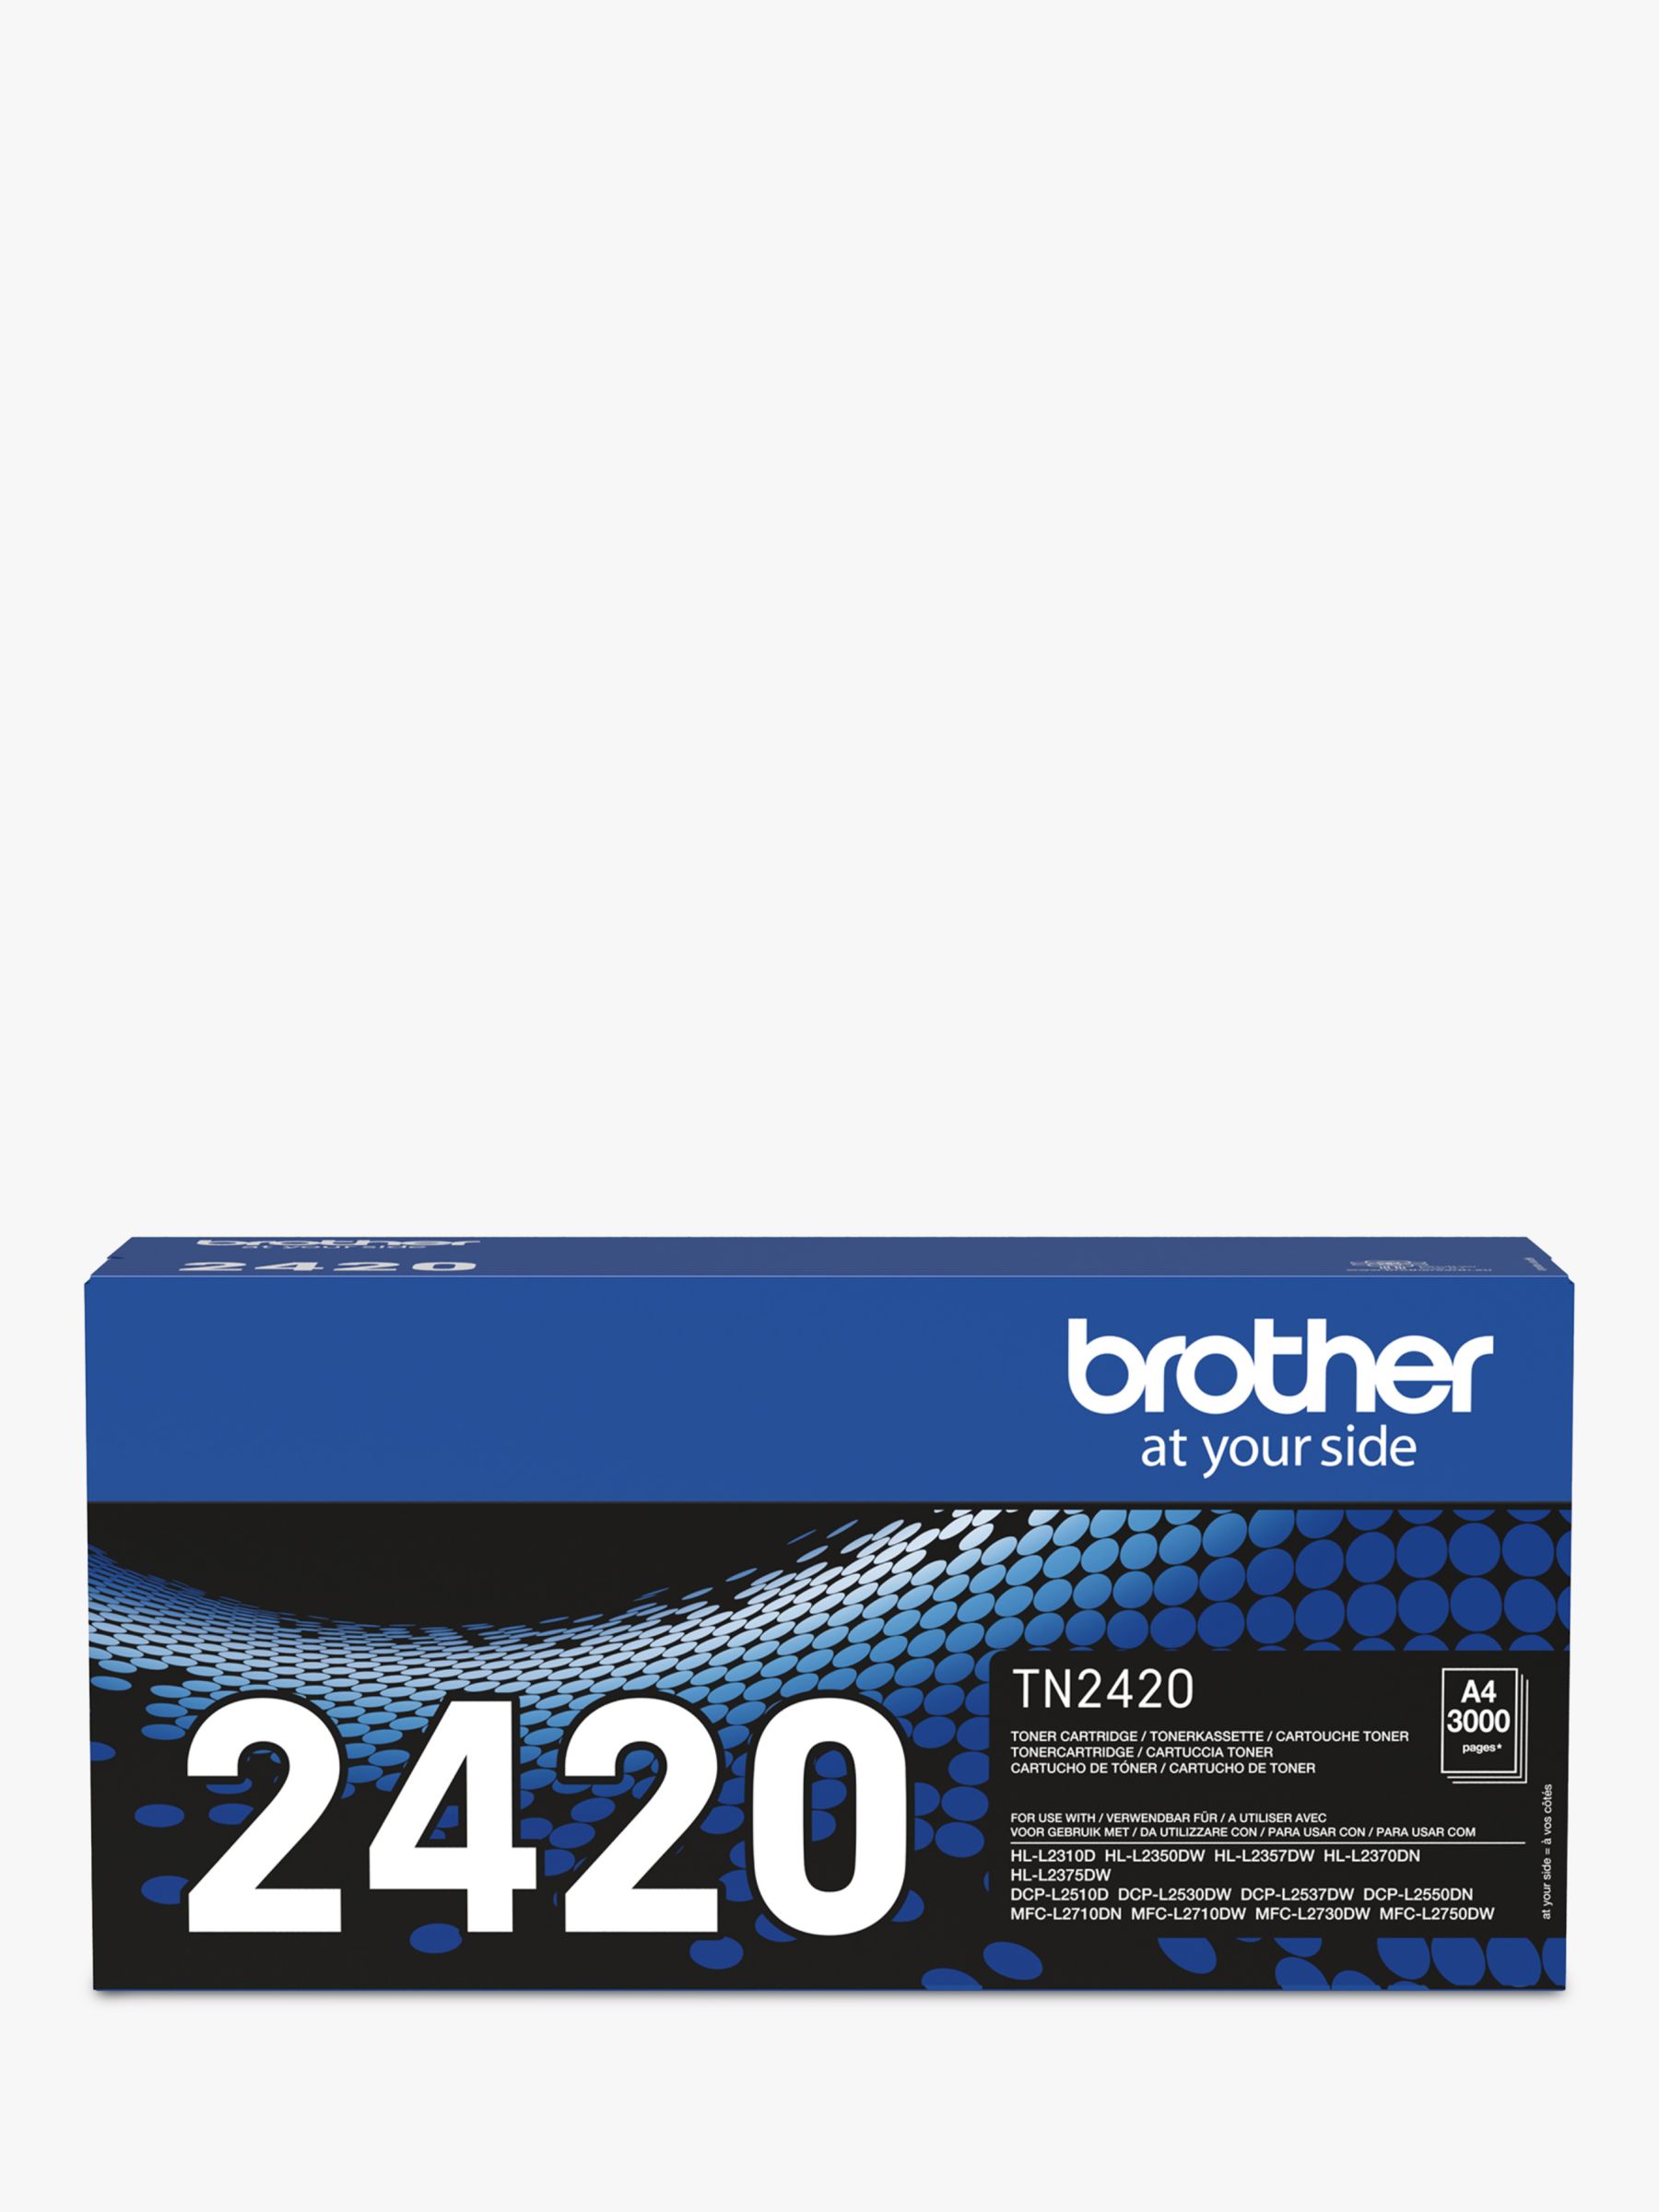 UDERUI Applicable for Brother TN2410 2420 Toner Cartridge Separate Type  Toner Cartridge Applicable to Printer Model L2750DW L2730DW L2510D Black